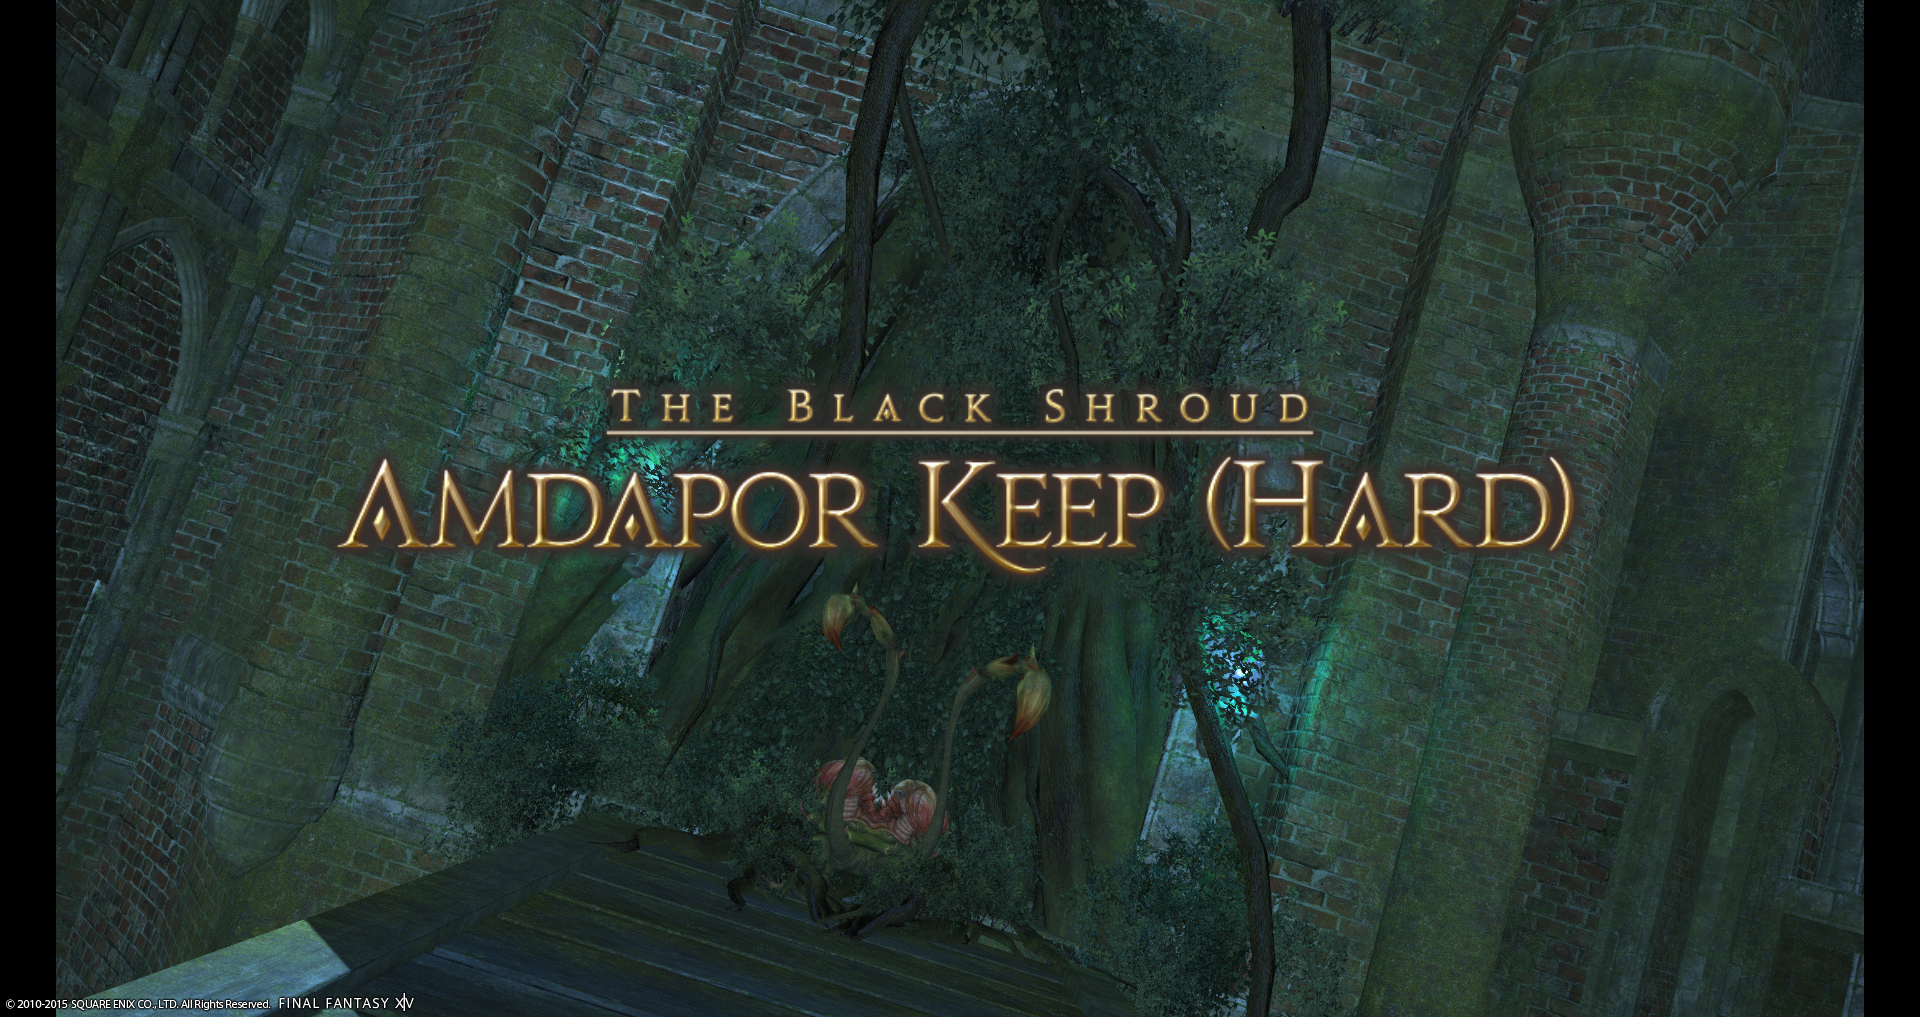 Amdapor Keep (Hard) | Final Fantasy Wiki | Fandom